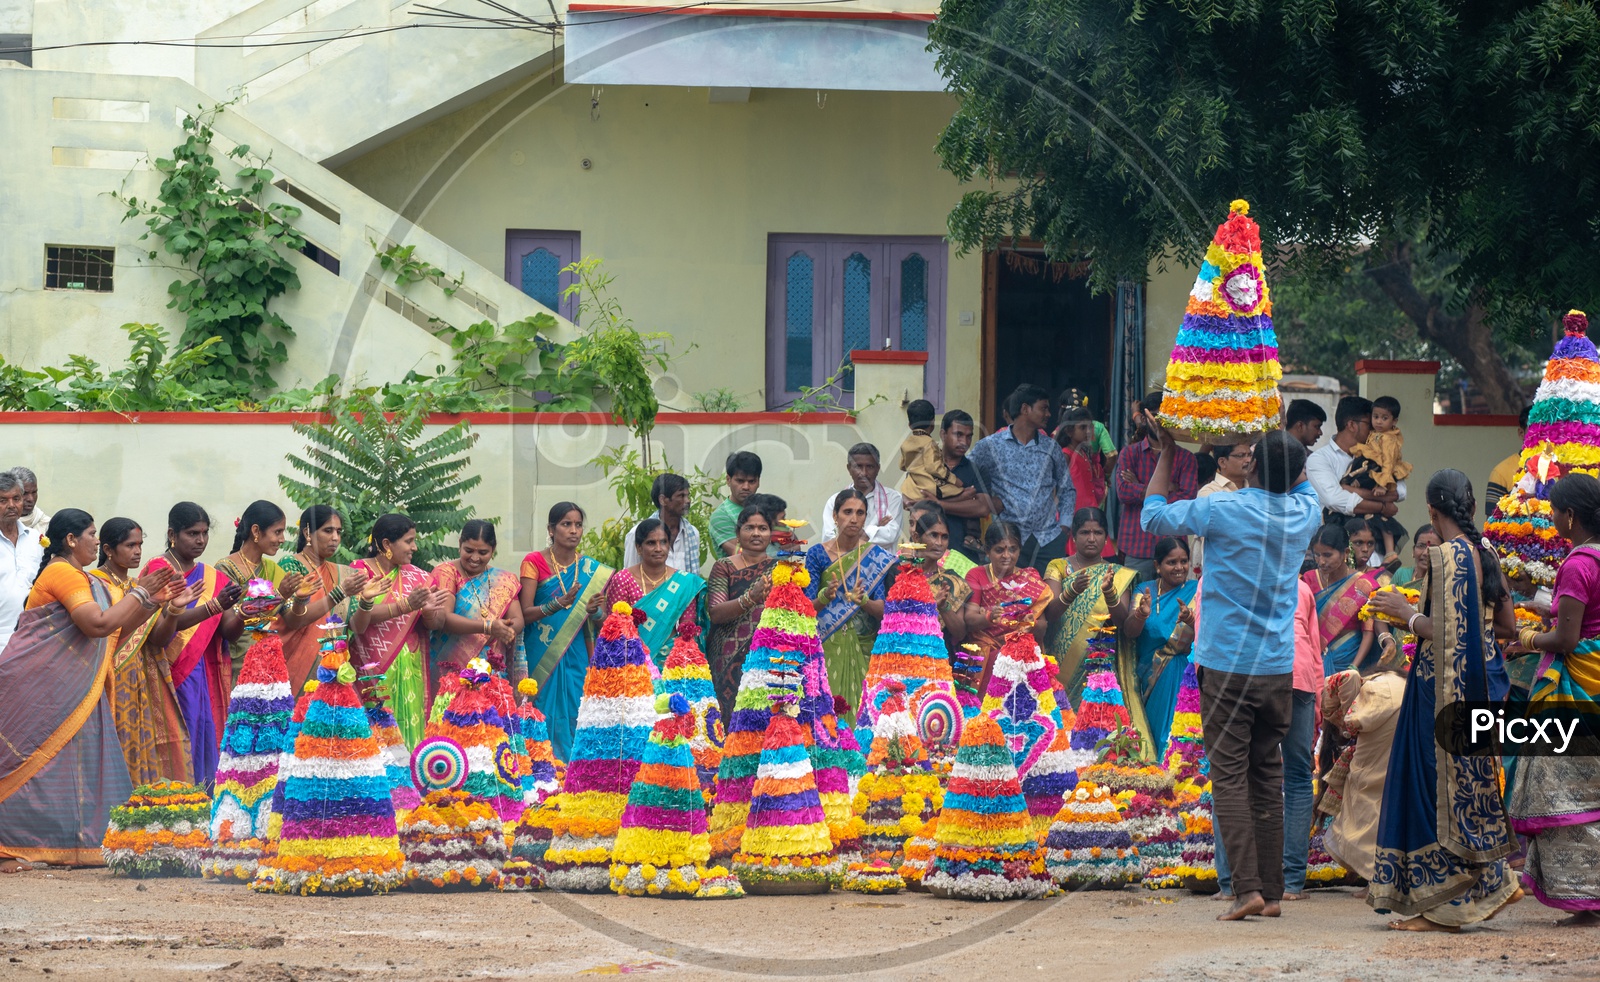 Women of Telangana celebrate Saddula Bathukamma(Pedda Bathukamma) by decorating flowers and dancing in front of them